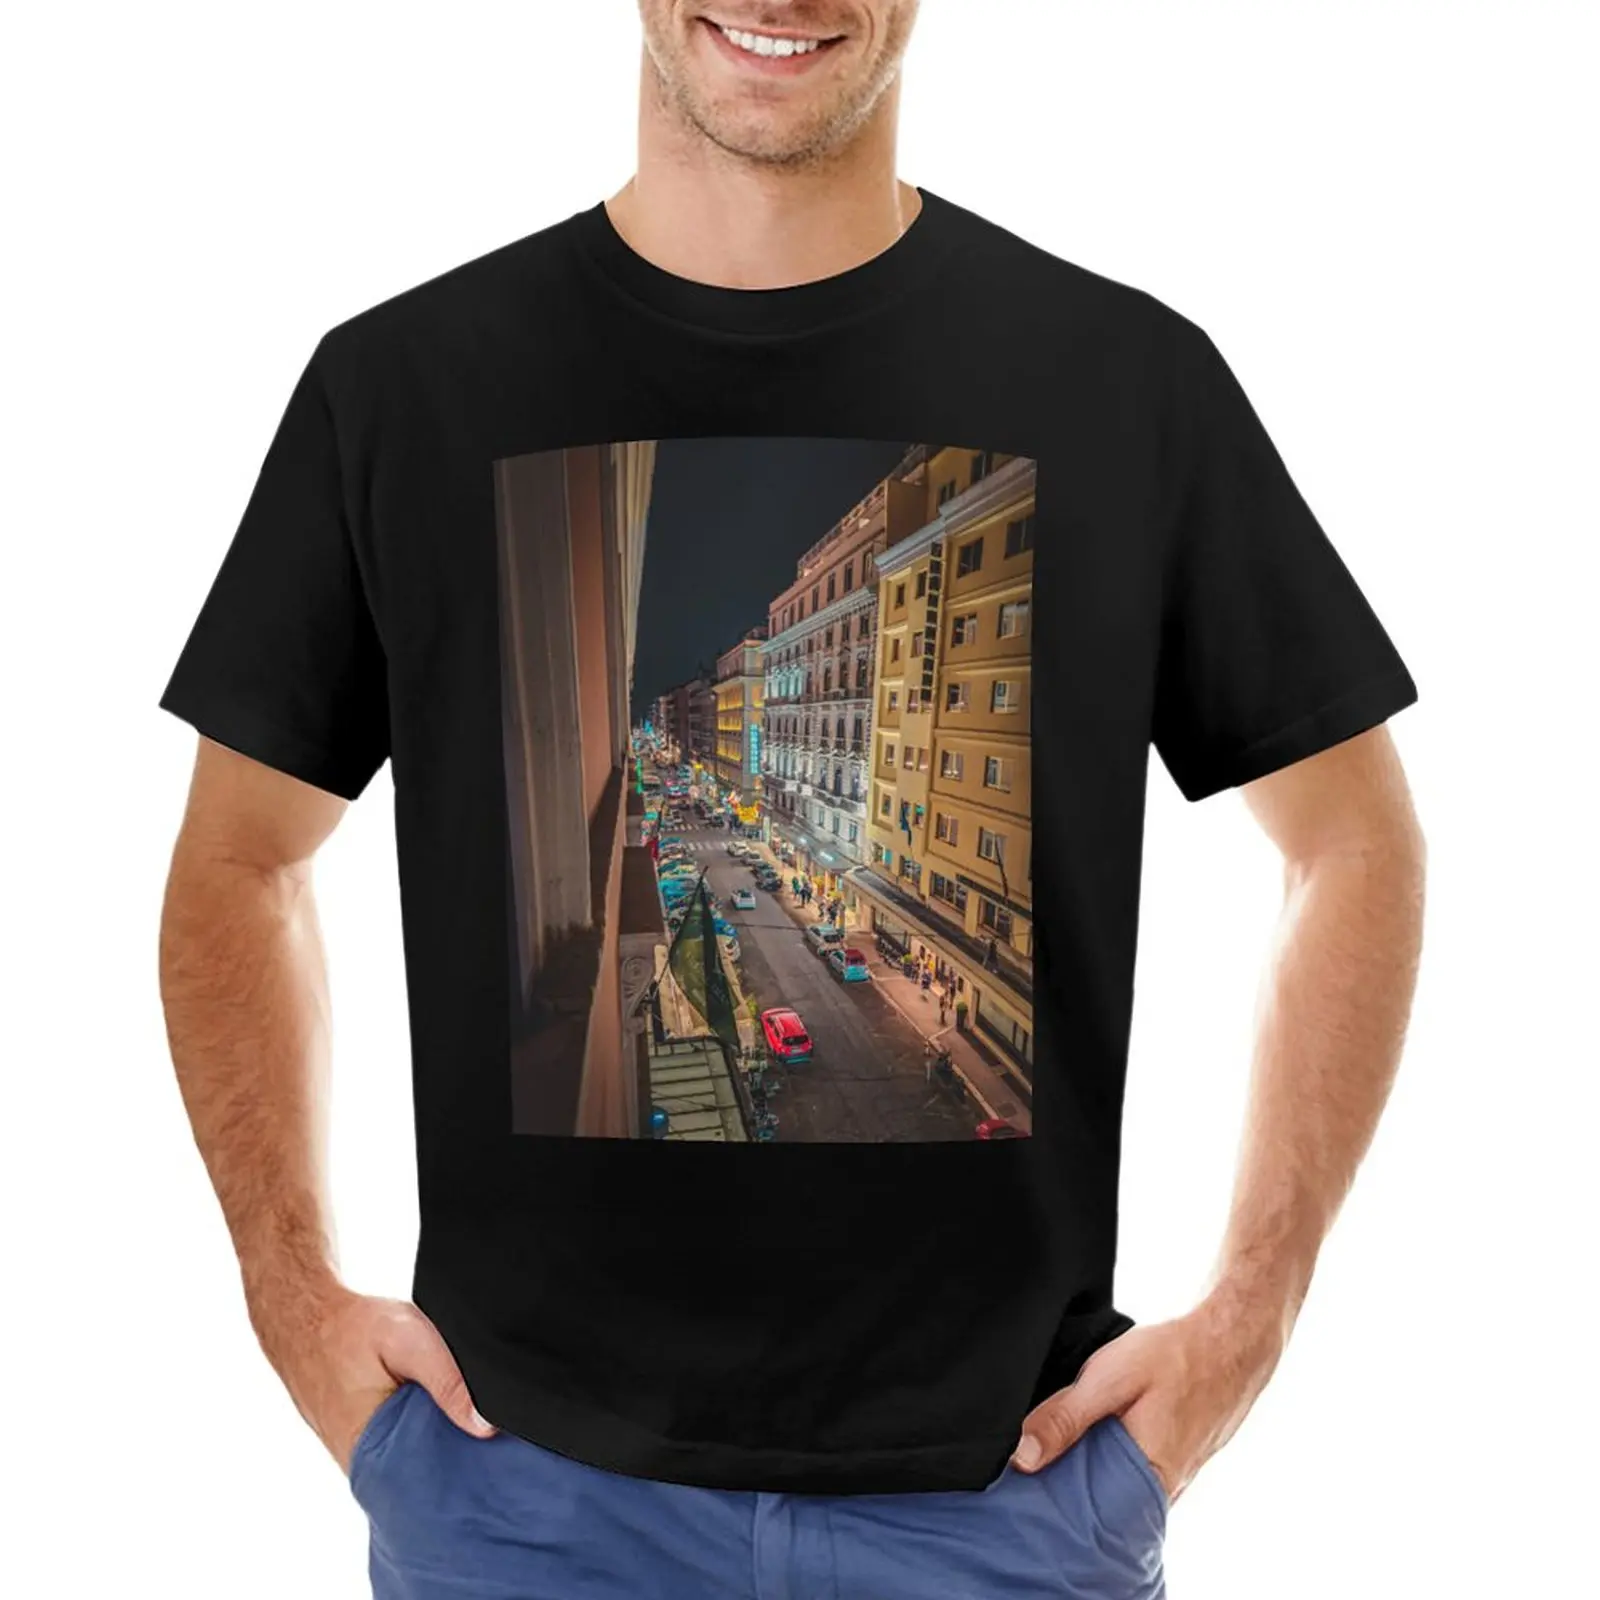 Футболка Roman Street by Night, футболки для любителей спорта, забавные футболки, футболки для мужчин